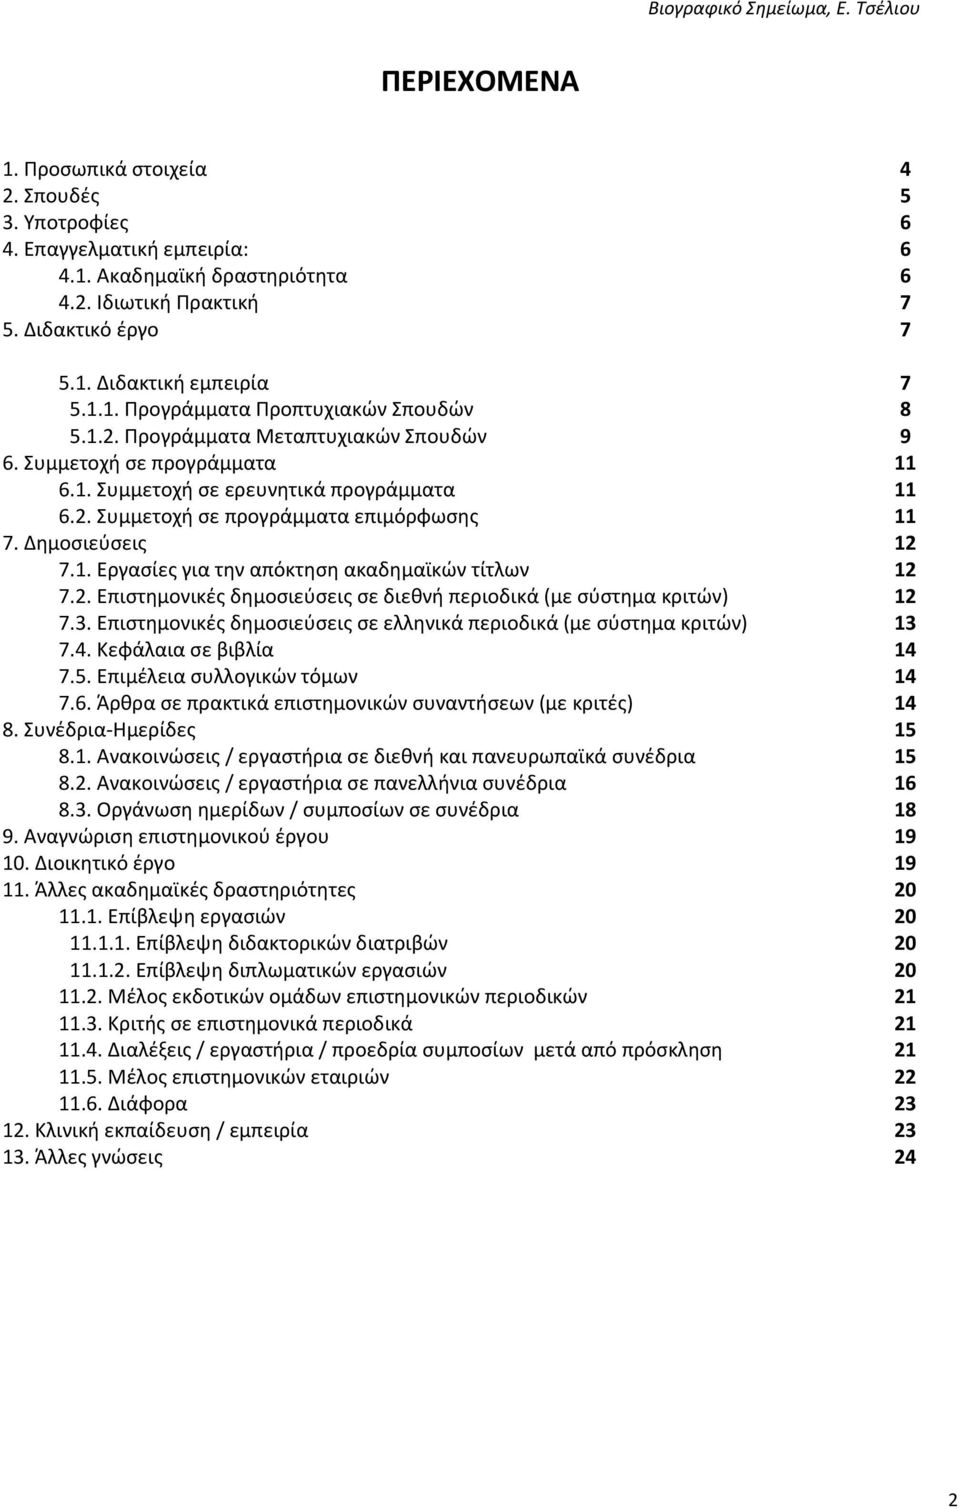 Δημοσιεύσεις 12 7.1. Εργασίες για την απόκτηση ακαδημαϊκών τίτλων 12 7.2. Επιστημονικές δημοσιεύσεις σε διεθνή περιοδικά (με σύστημα κριτών) 12 7.3.